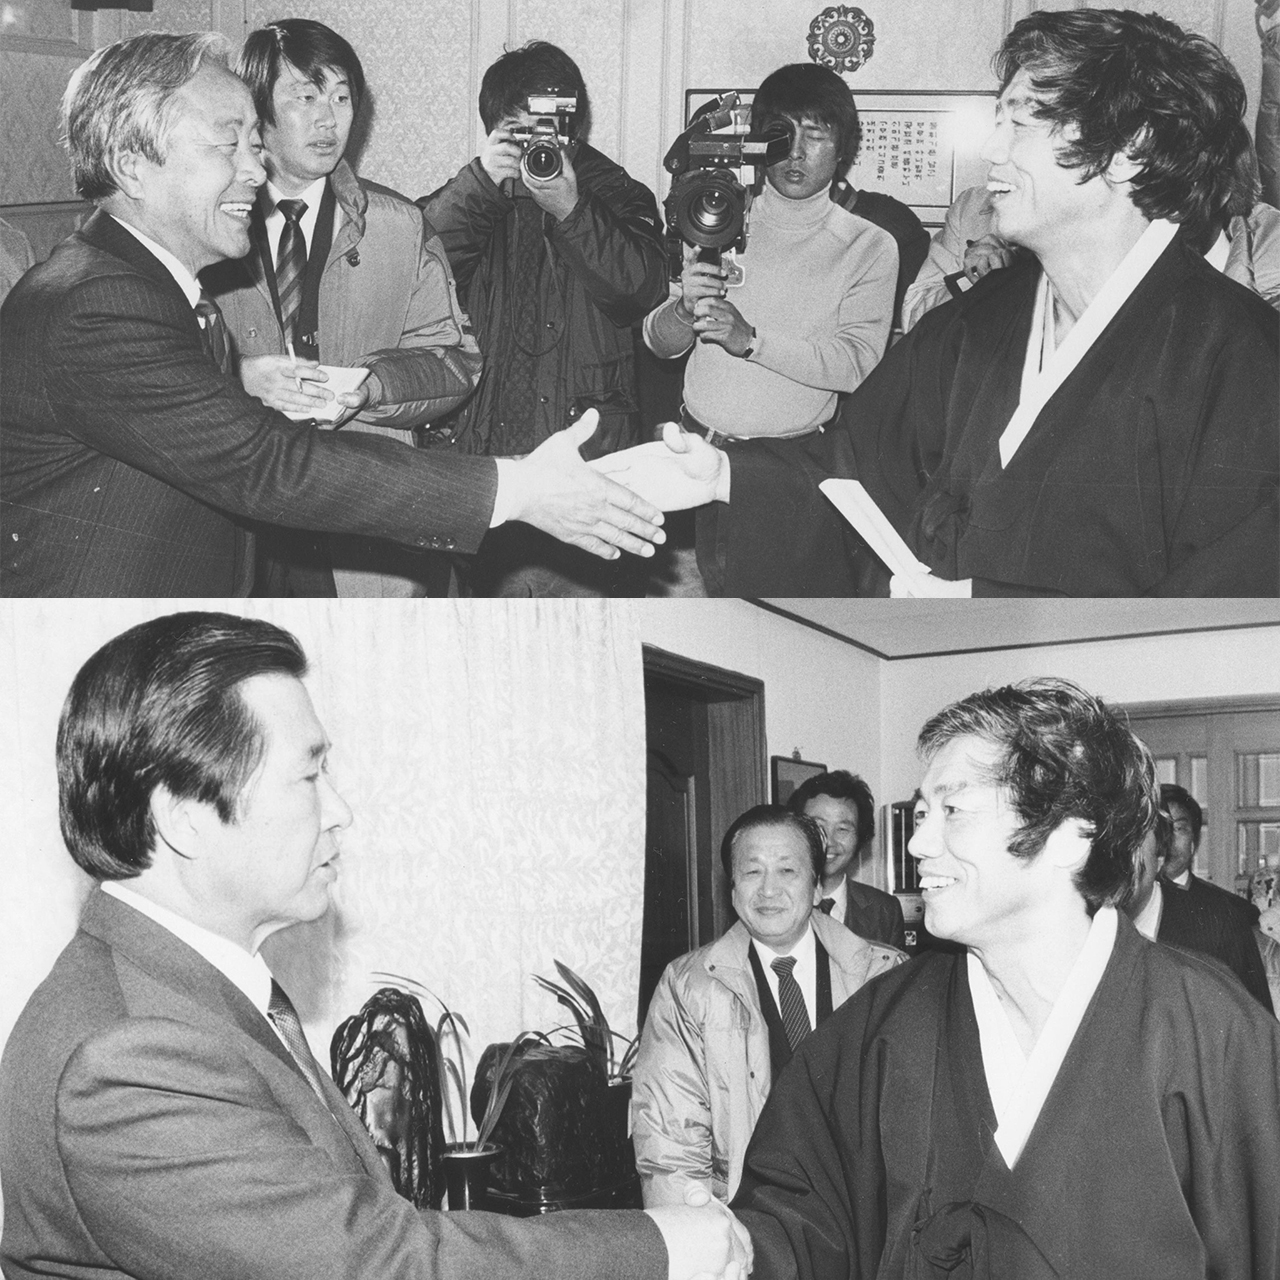 독자후보론의 후보 백기완은 1987년 12월 10일과 11일에 걸쳐 각각 김영삼(위)과 김대중(아래)을 만나서 대통령 후보 단일화에 대한 마지막 노력을 기울였으나 허사가 되고 말았다.